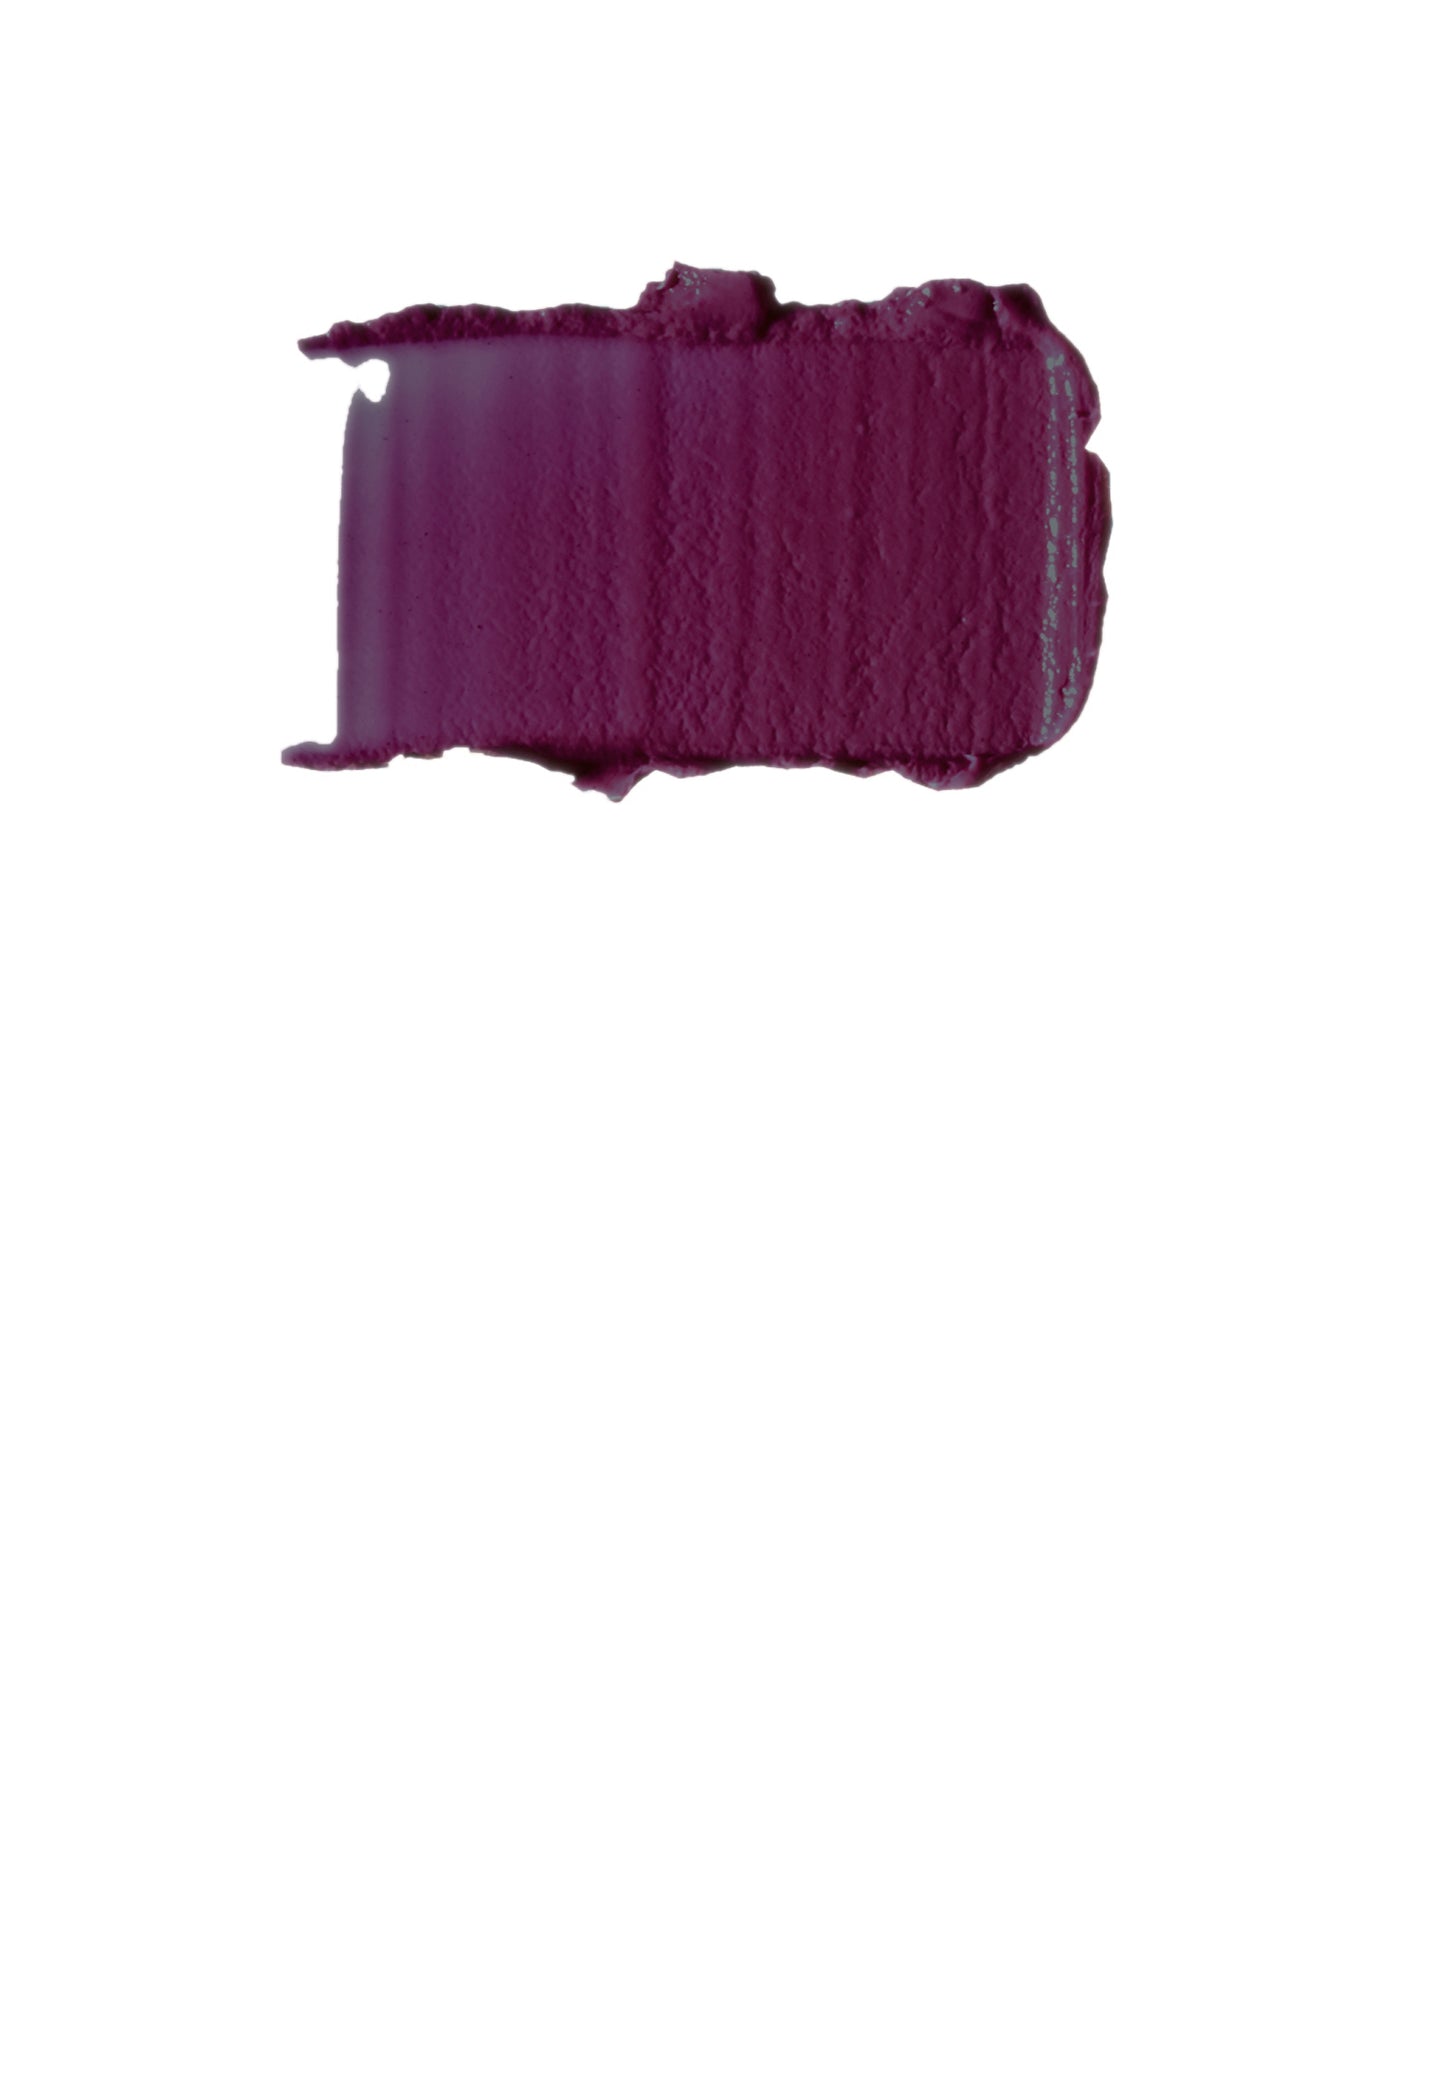 Bellapierre Mineral Lipstick  100% Natural Long Lasting Color - Va! Va!  Voom!